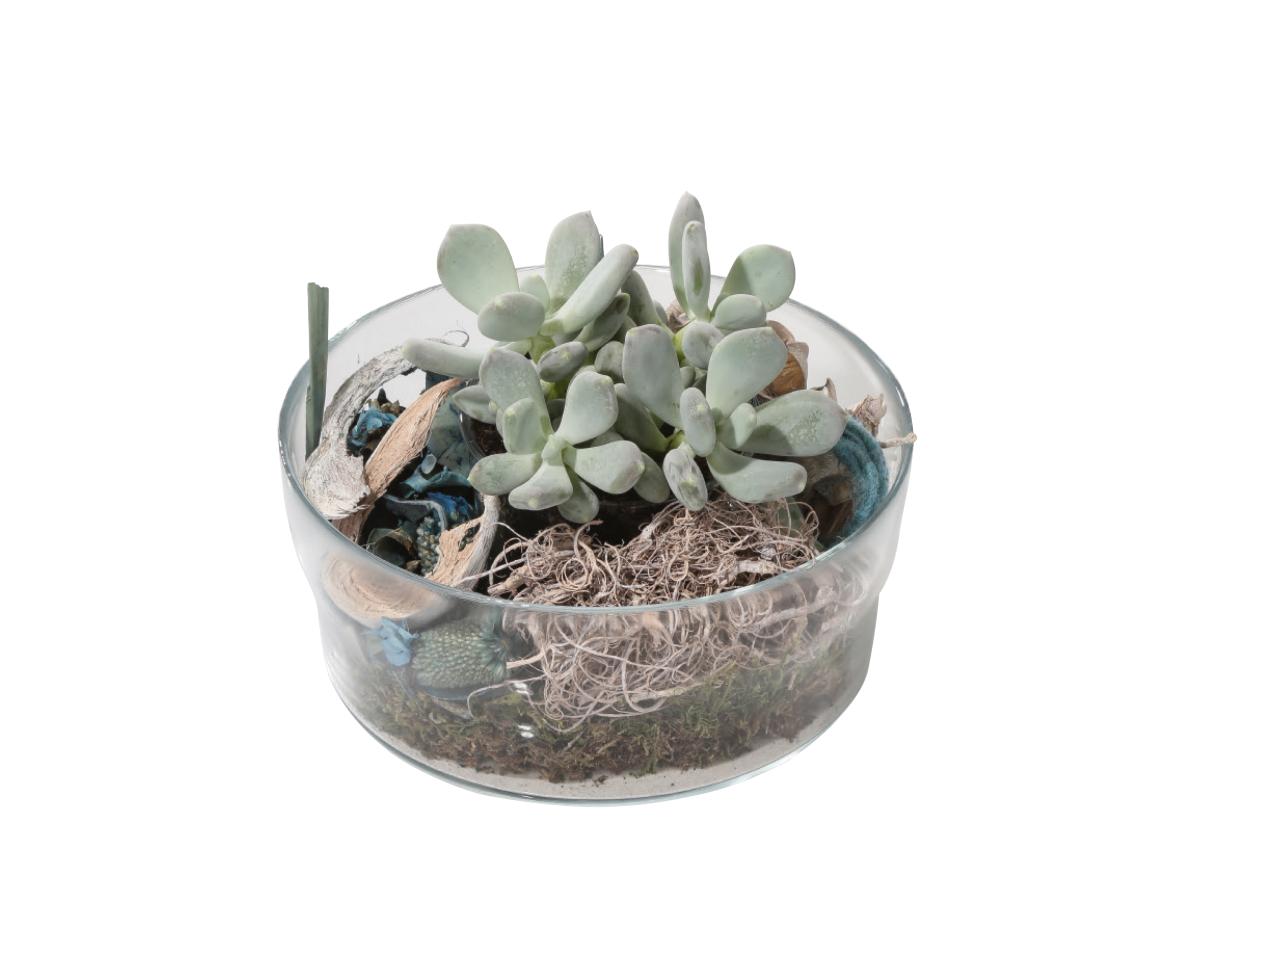 Vetplant in glazen schaal